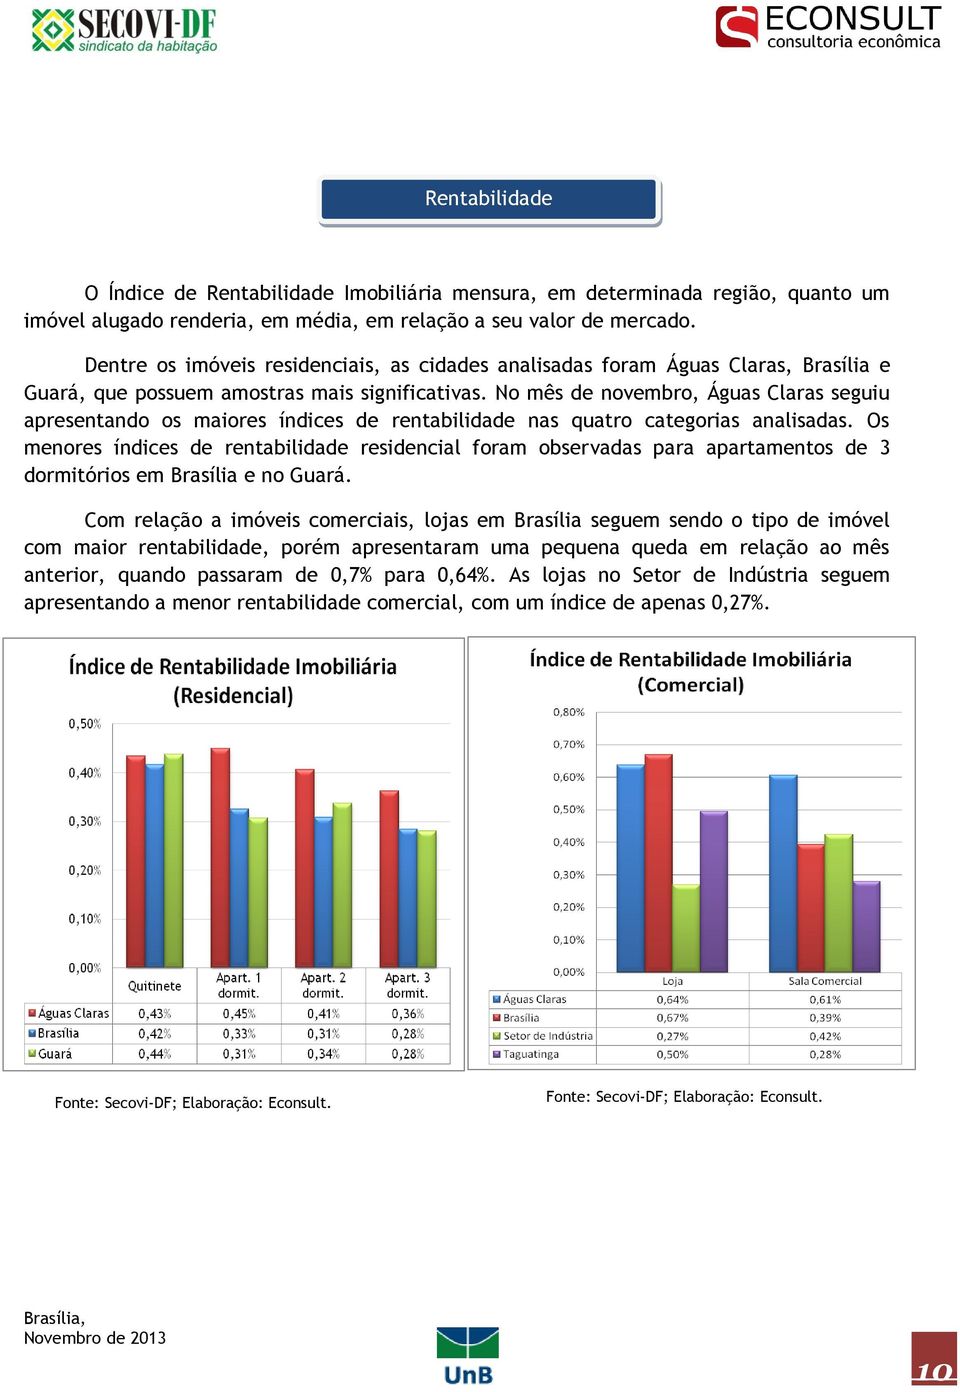 No mês de novembro, Águas Claras seguiu apresentando os maiores índices de rentabilidade nas quatro categorias analisadas.